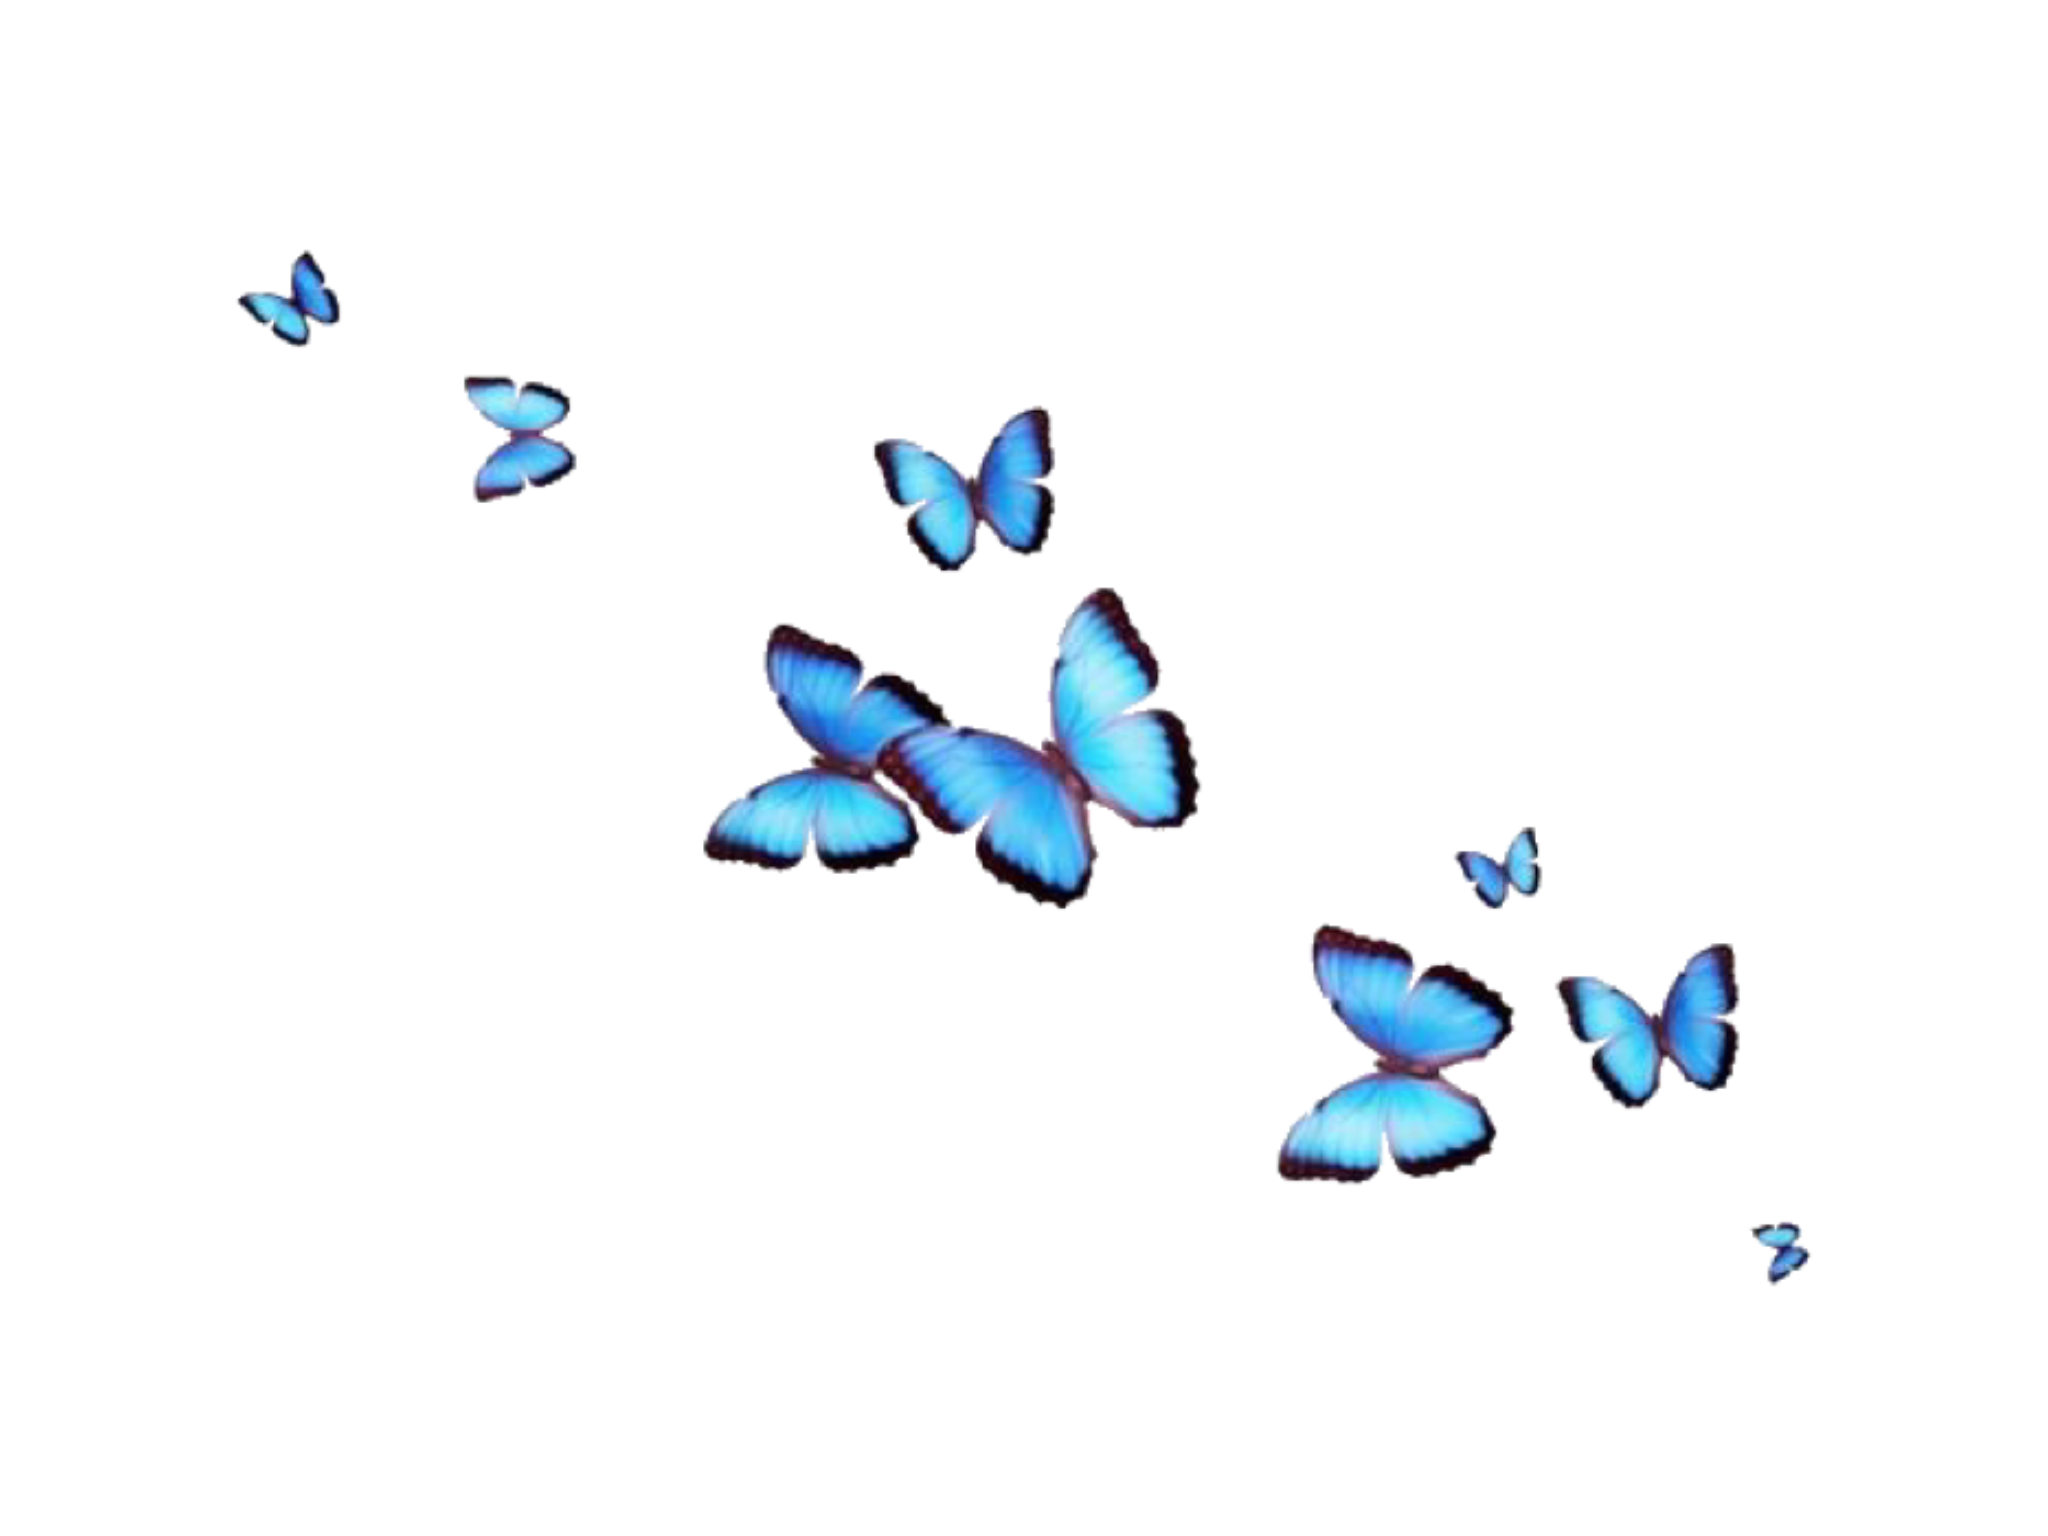 Hãy cùng khám phá nguồn tài nguyên hình ảnh bướm thẩm mỹ đầy ấn tượng và độc đáo. Bộ sưu tập của chúng tôi chứa đựng những hình ảnh bướm được chỉnh sửa tỉ mỉ nhằm mang lại một trải nghiệm tuyệt vời cho người sử dụng. Hãy sáng tạo và tận dụng chúng cho mục đích của bạn.